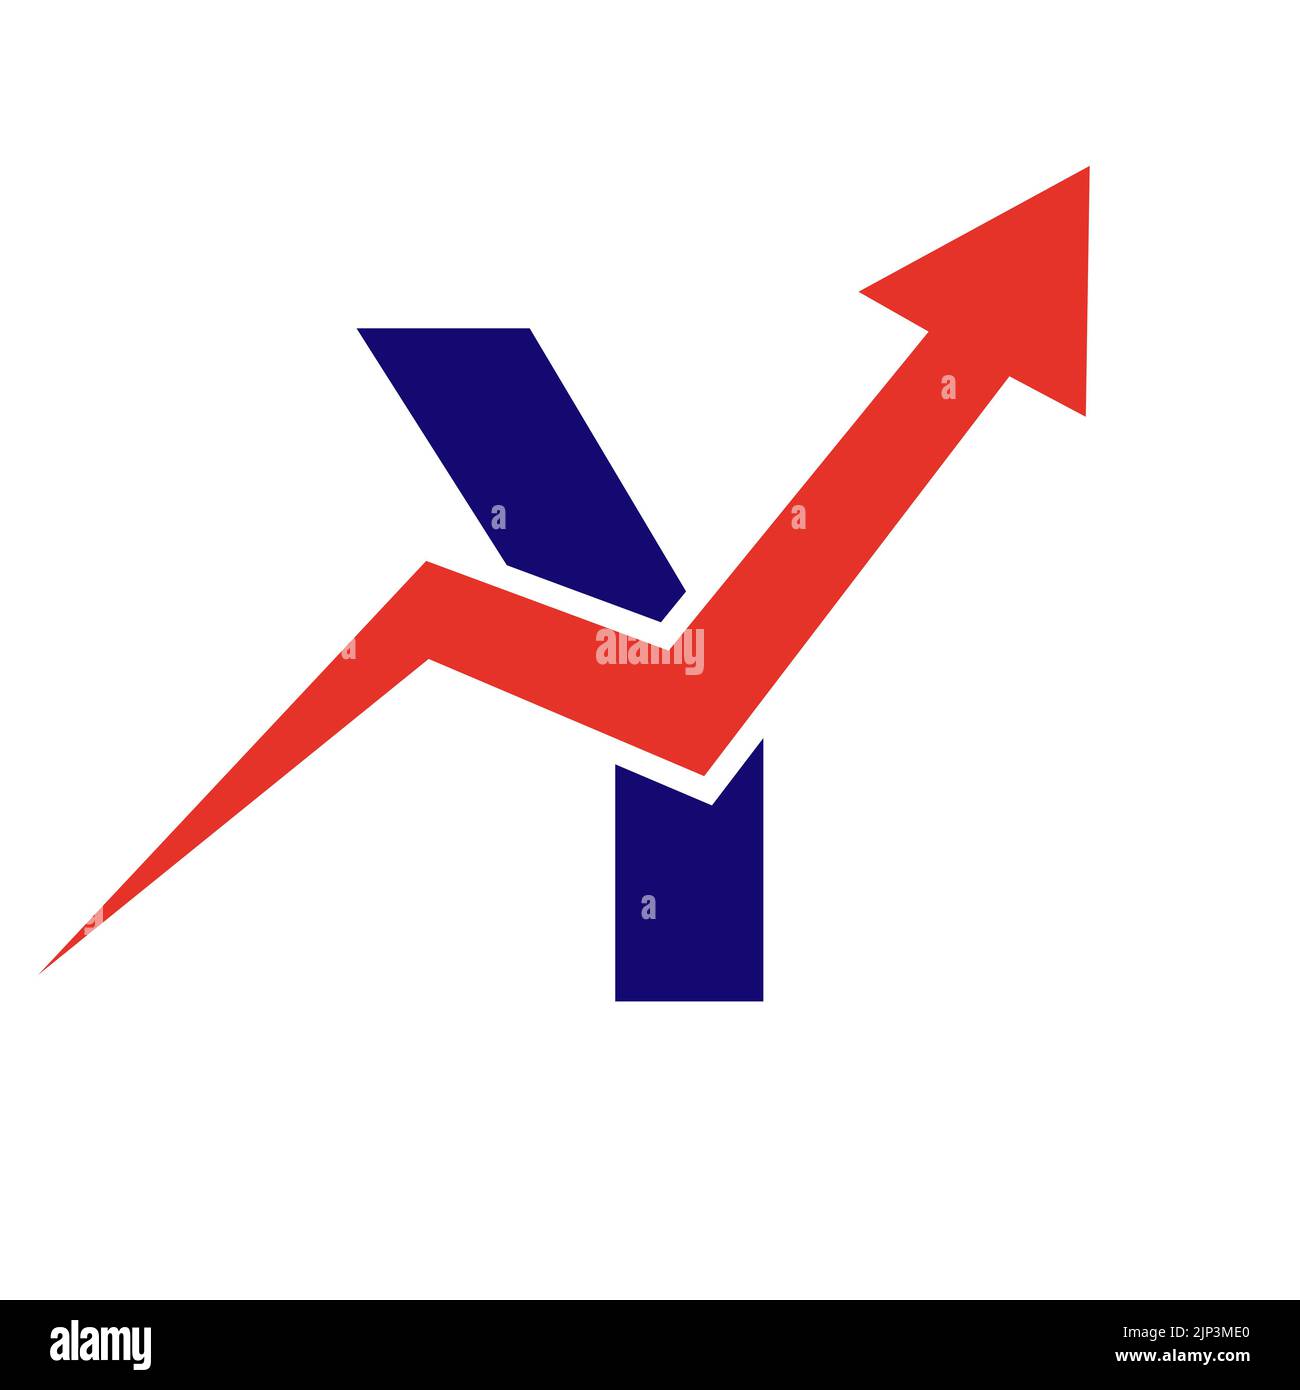 Buchstabe Y Finanzlogo. Finanz- und Finanzinvestitionsentwicklung Logo Template Konzept mit Business Growth Arrow Stock Vektor